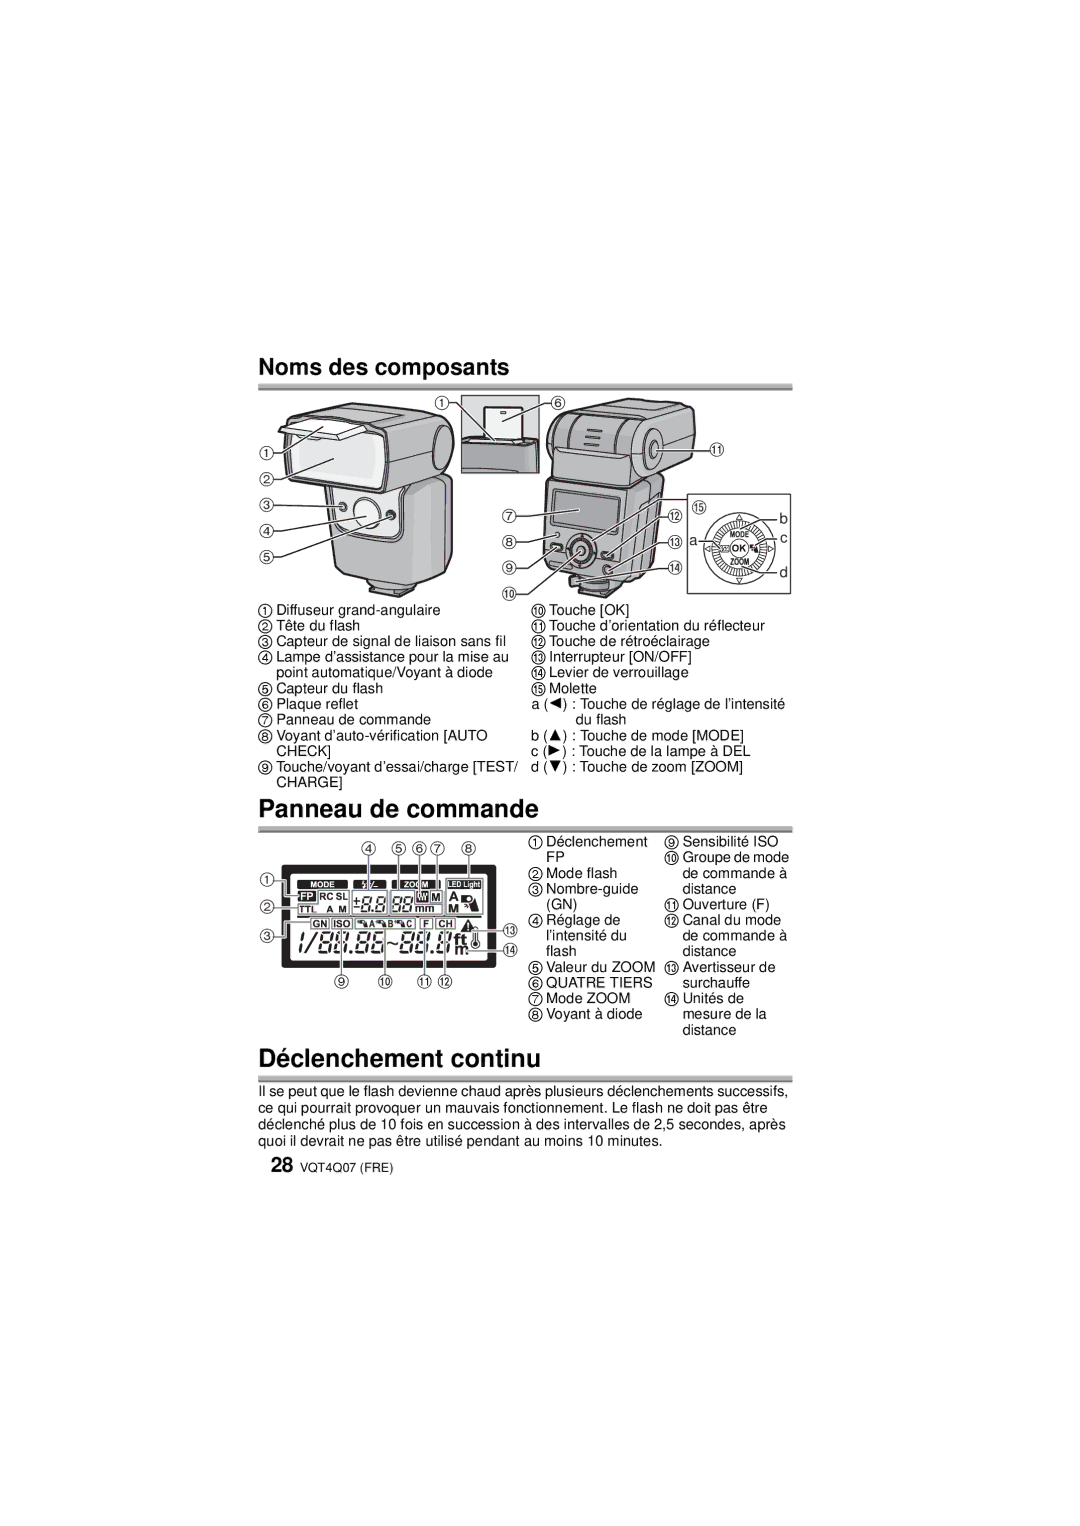 Panasonic DMW-FL360L operating instructions Panneau de commande, Déclenchement continu 